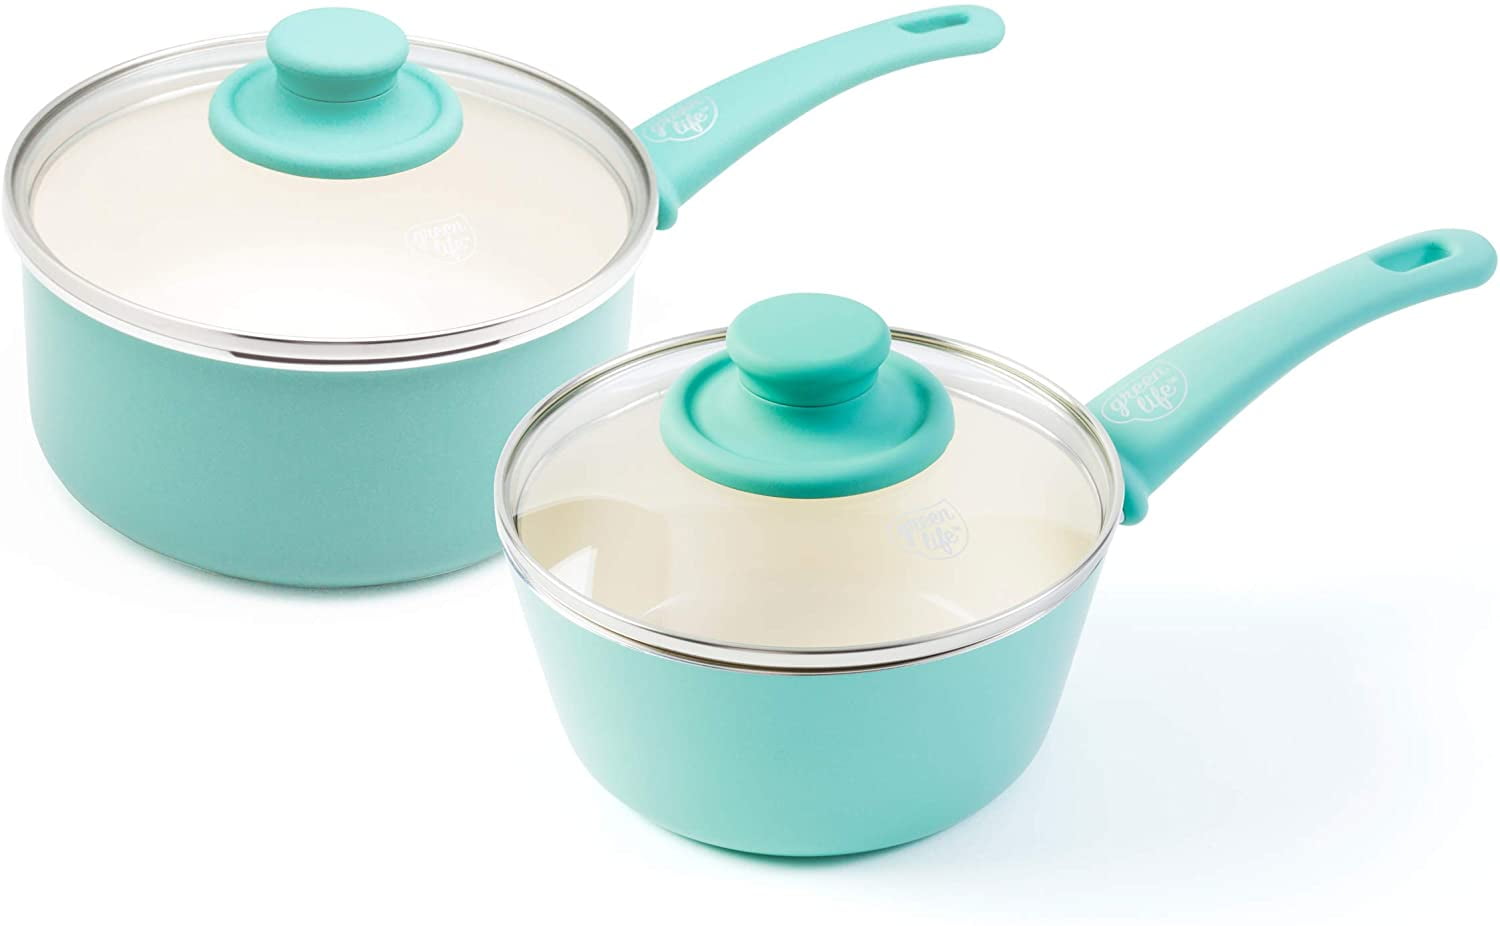 1QT and 2QT GreenLife Soft Grip Healthy Ceramic Nonstick Bright Blue Saucepan Set with Lids 